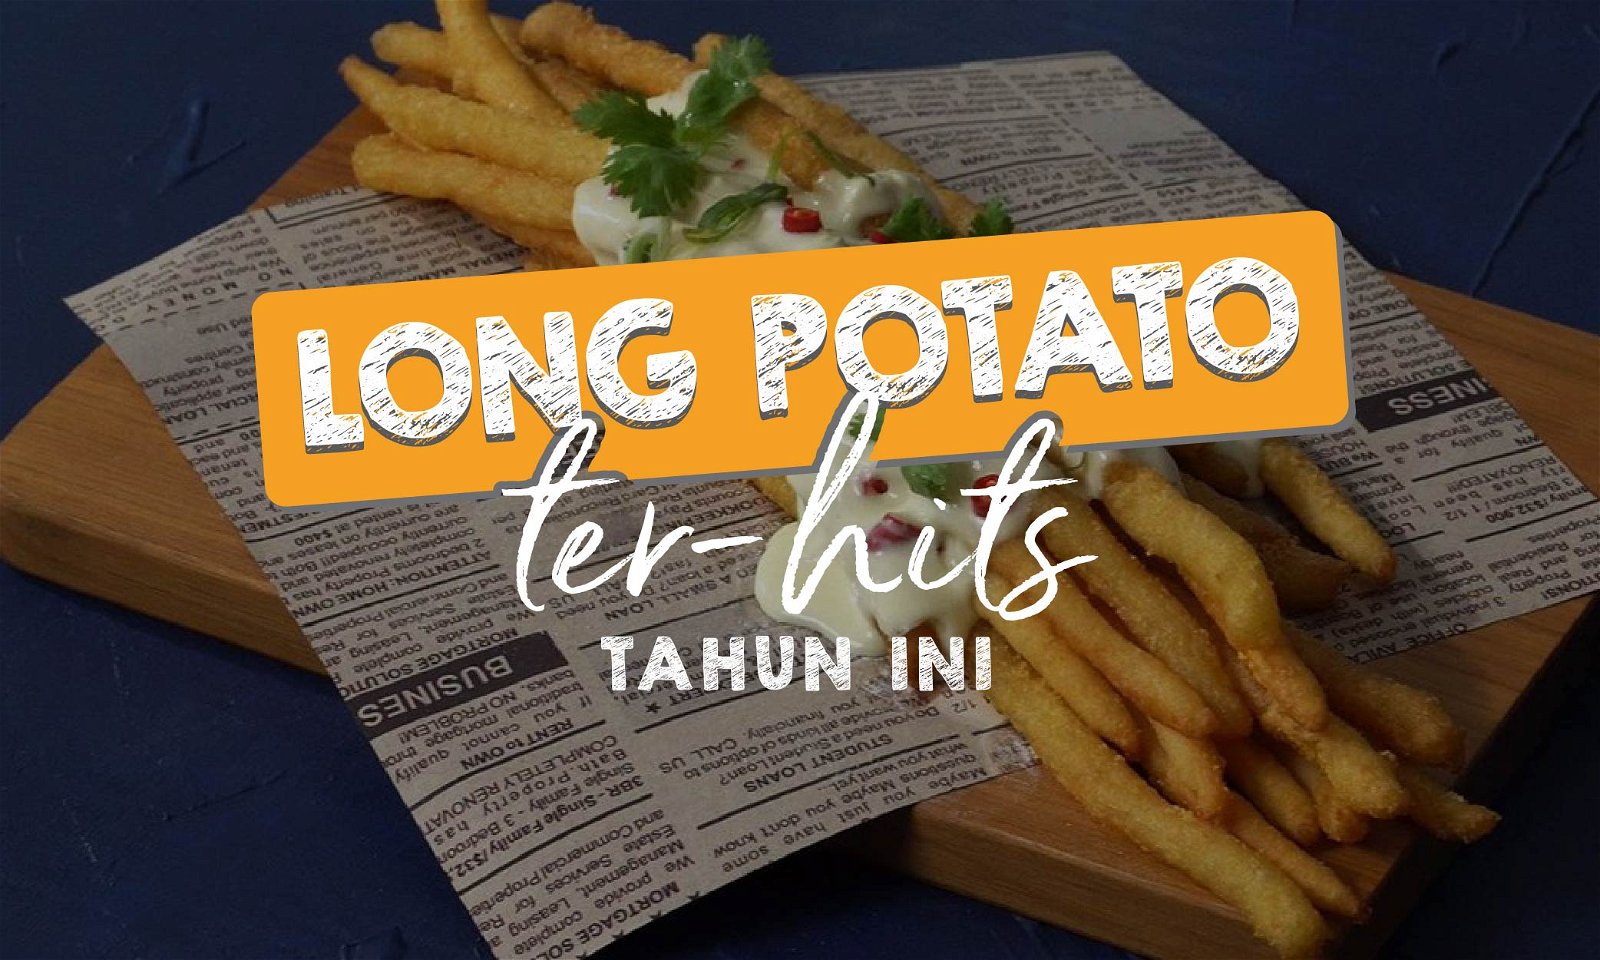 7 Long Potato di Jakarta Paling Hits Tahun Ini